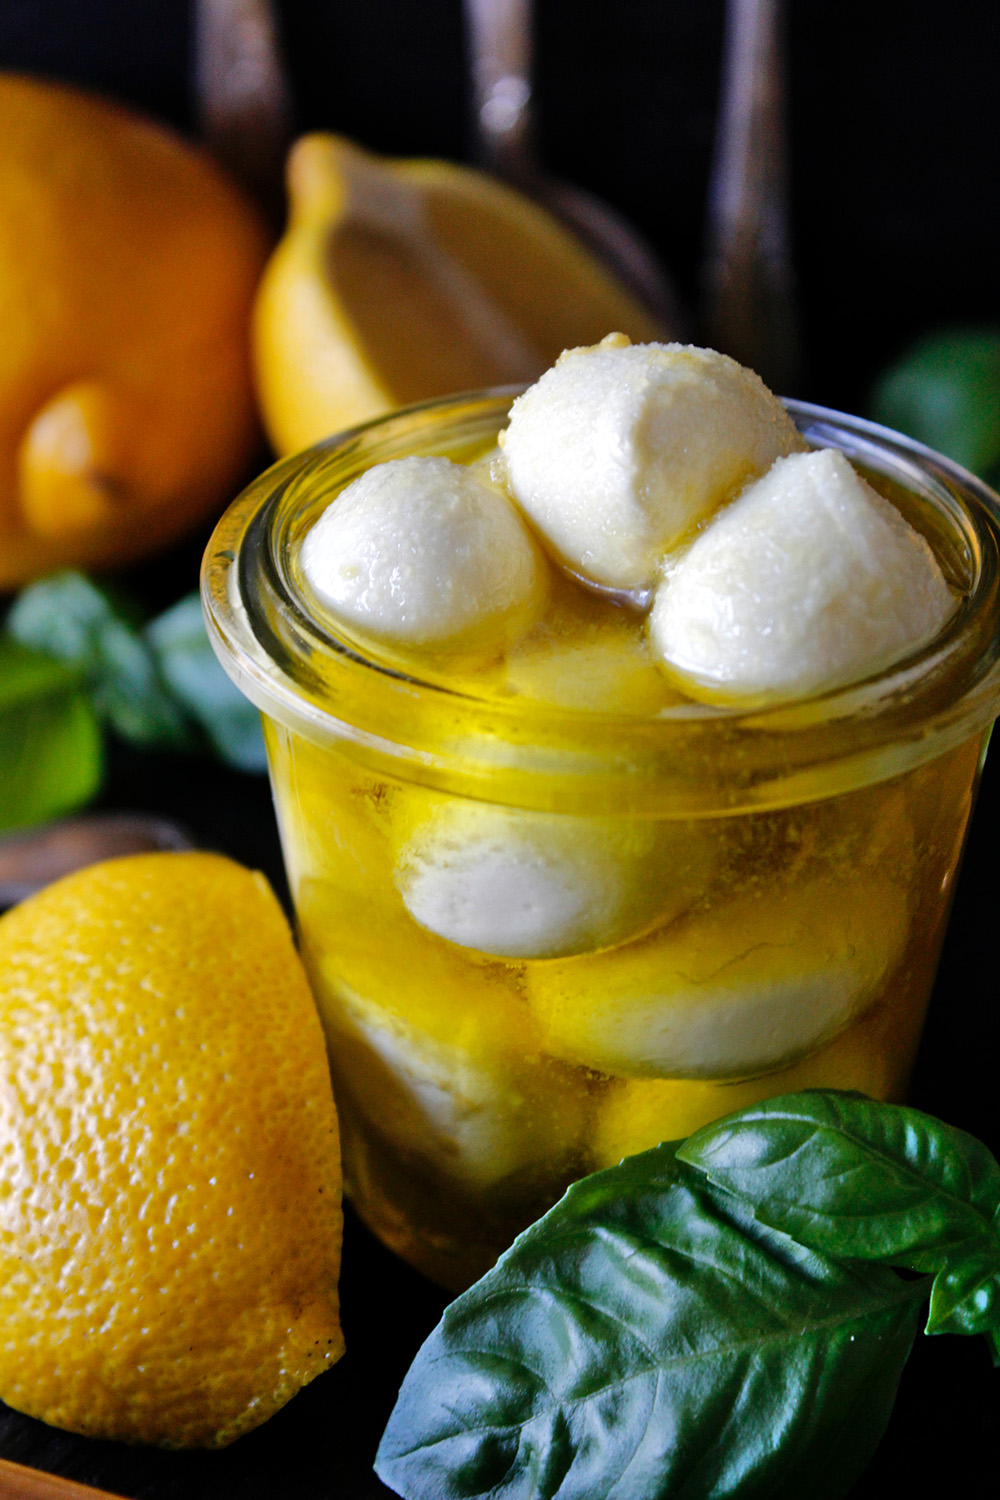 Rezept für Zitronen-Mozzarella von Einmal Nachschlag, bitte!